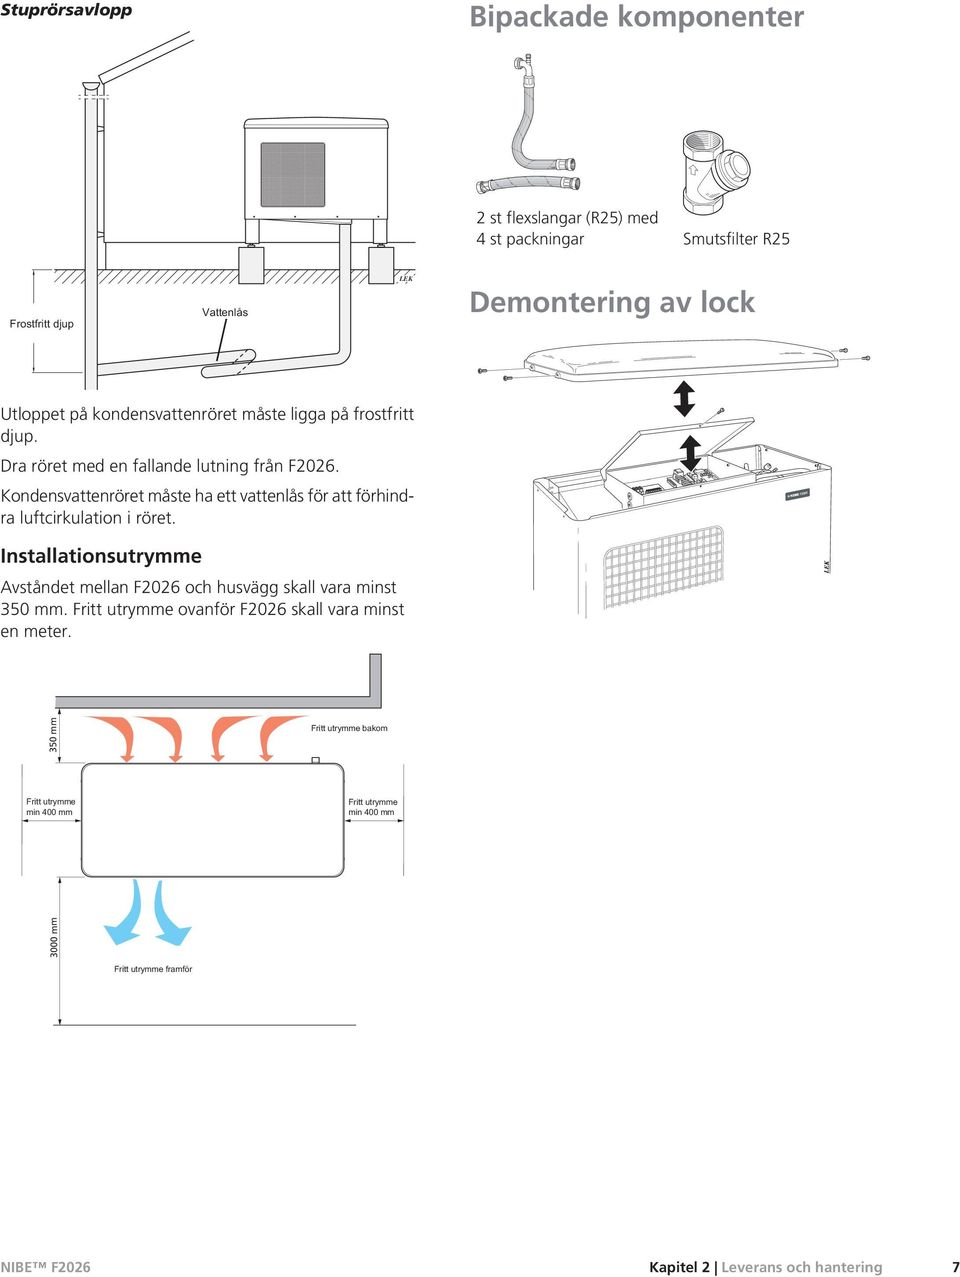 Kondensvattenröret måste ha ett vattenlås för att förhindra luftcirkulation i röret.